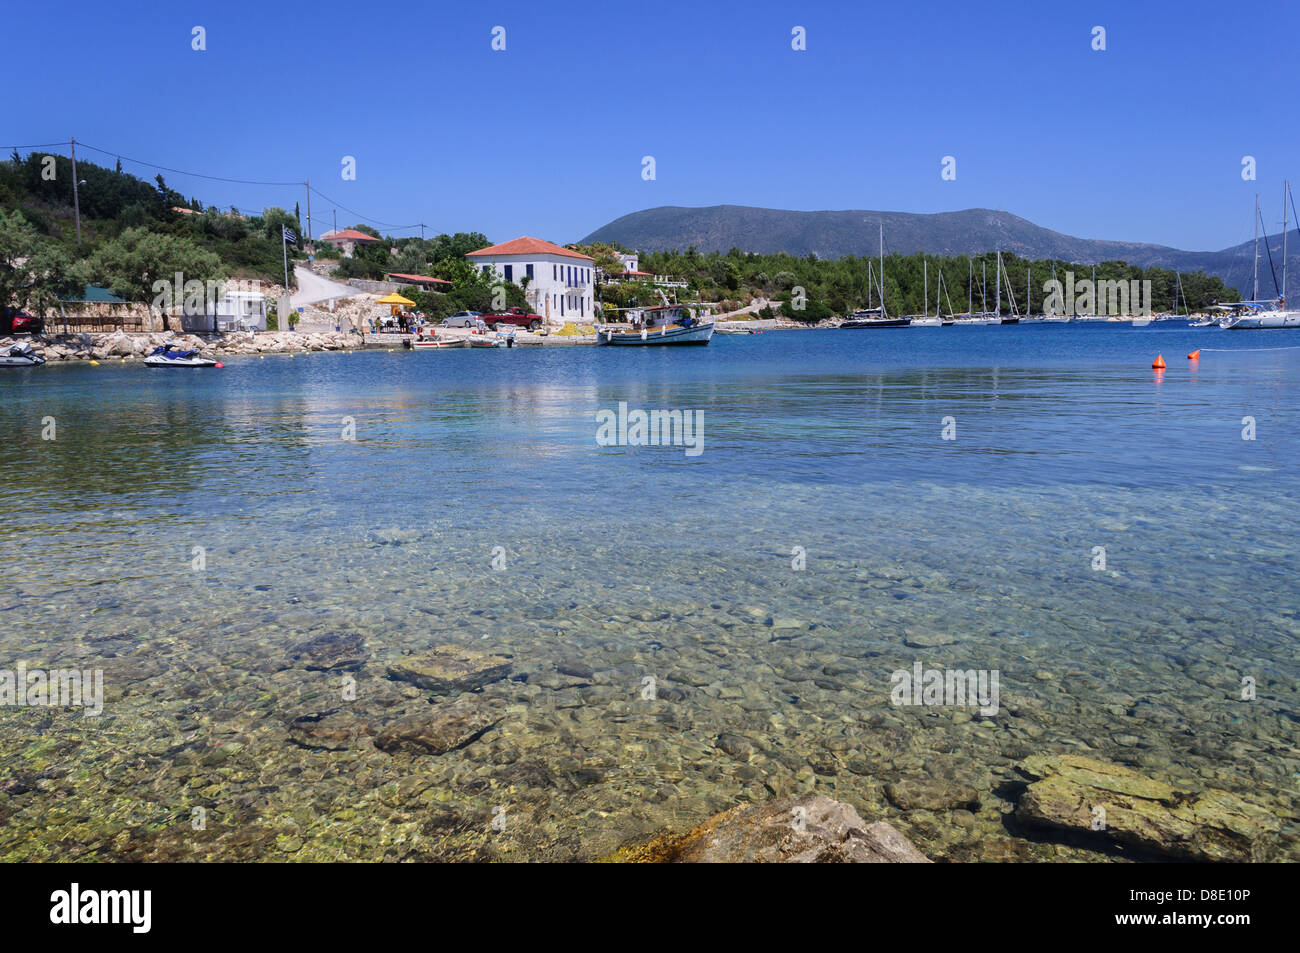 Immagine di Cefalonia la porta. Una bella e piena di vita, grafica, isola greca, ISOLE IONIE Foto Stock